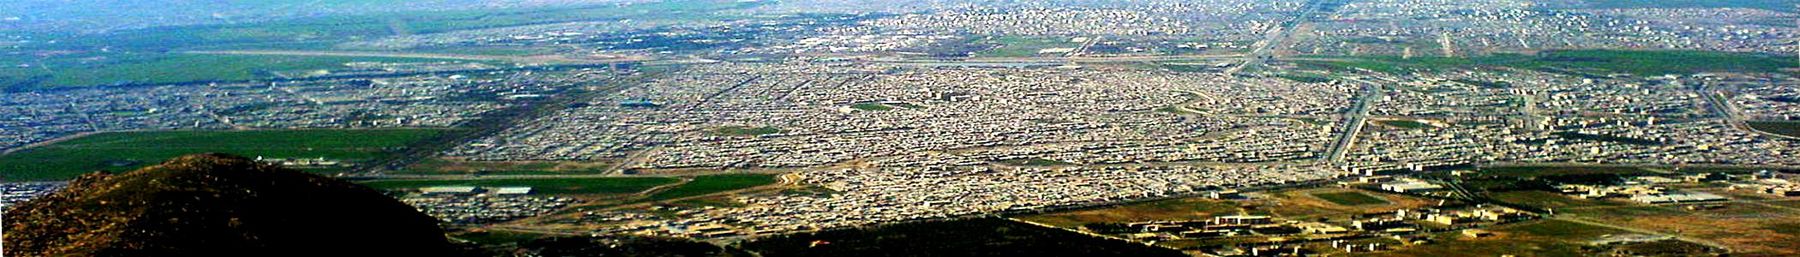 Kermanshah-Wikivoyage-banner.jpg